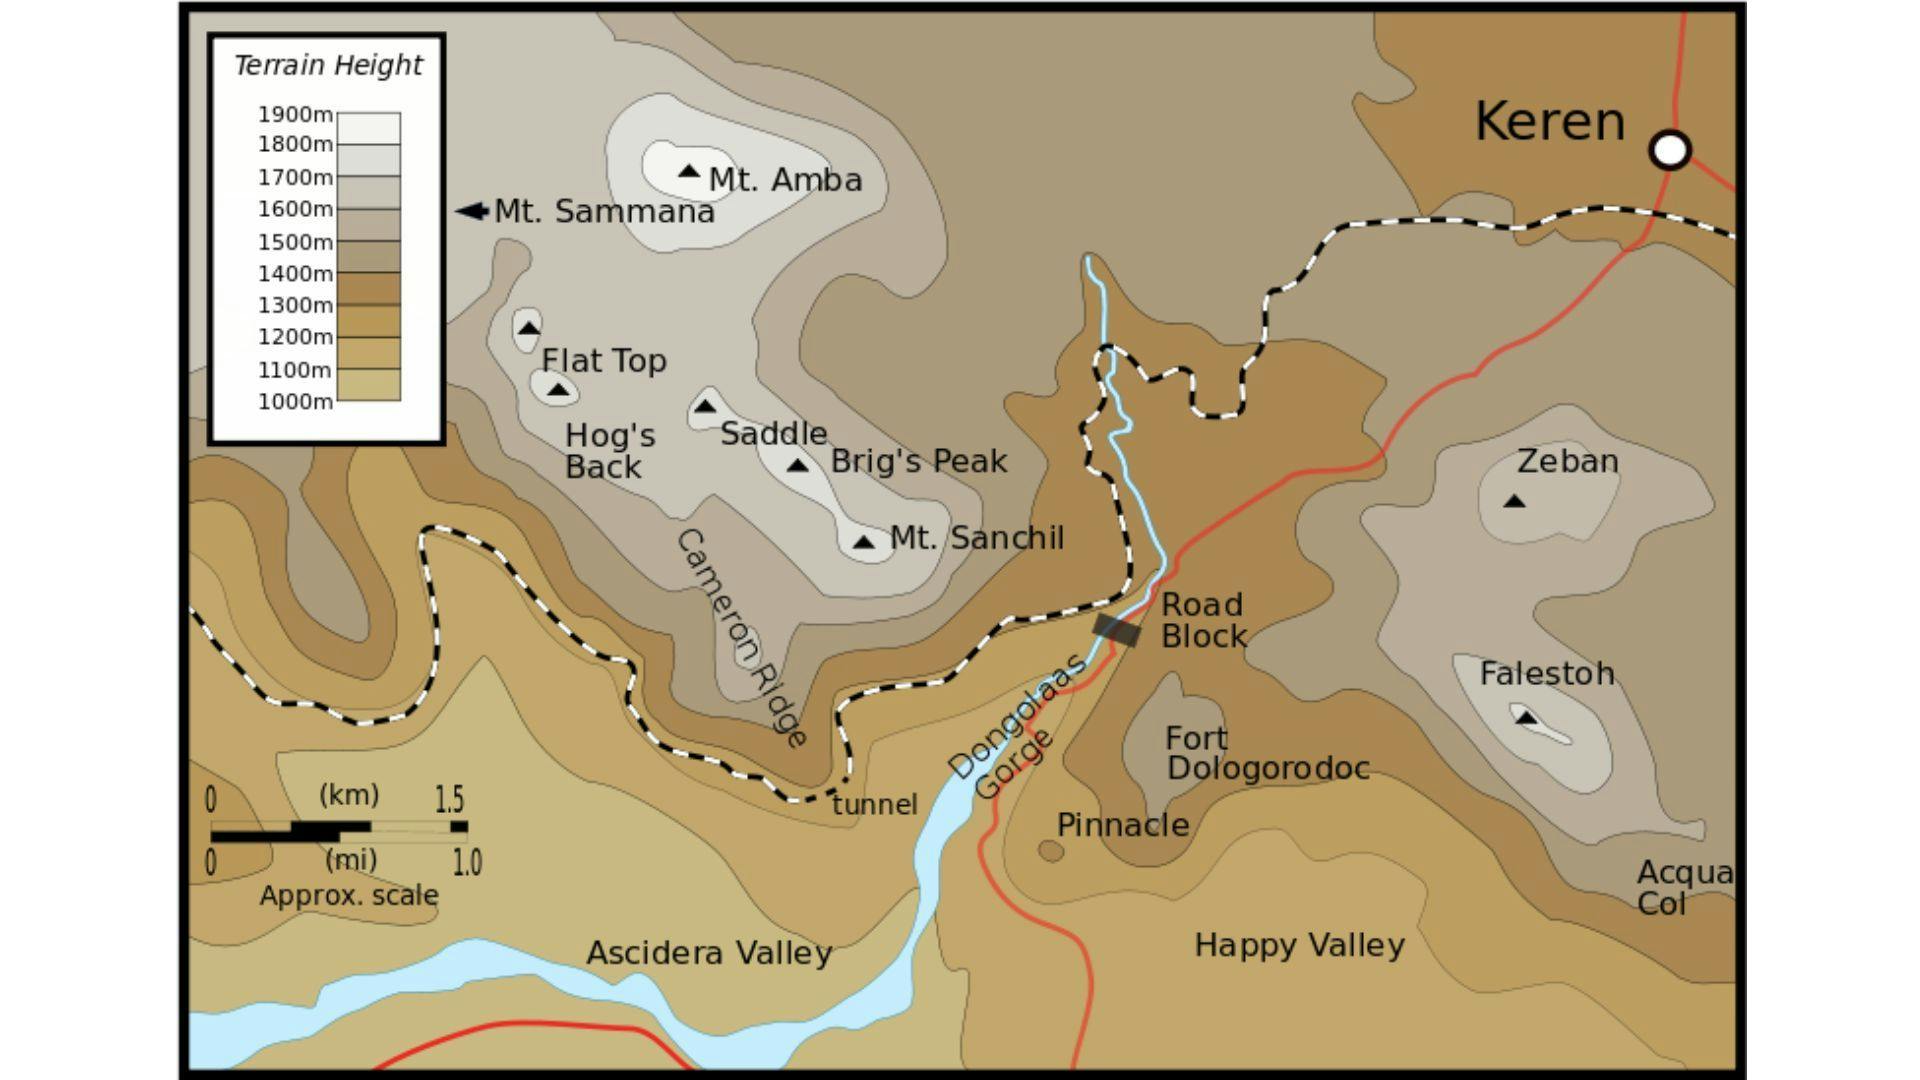 Battle of Keren Map | Wikimedia Commons